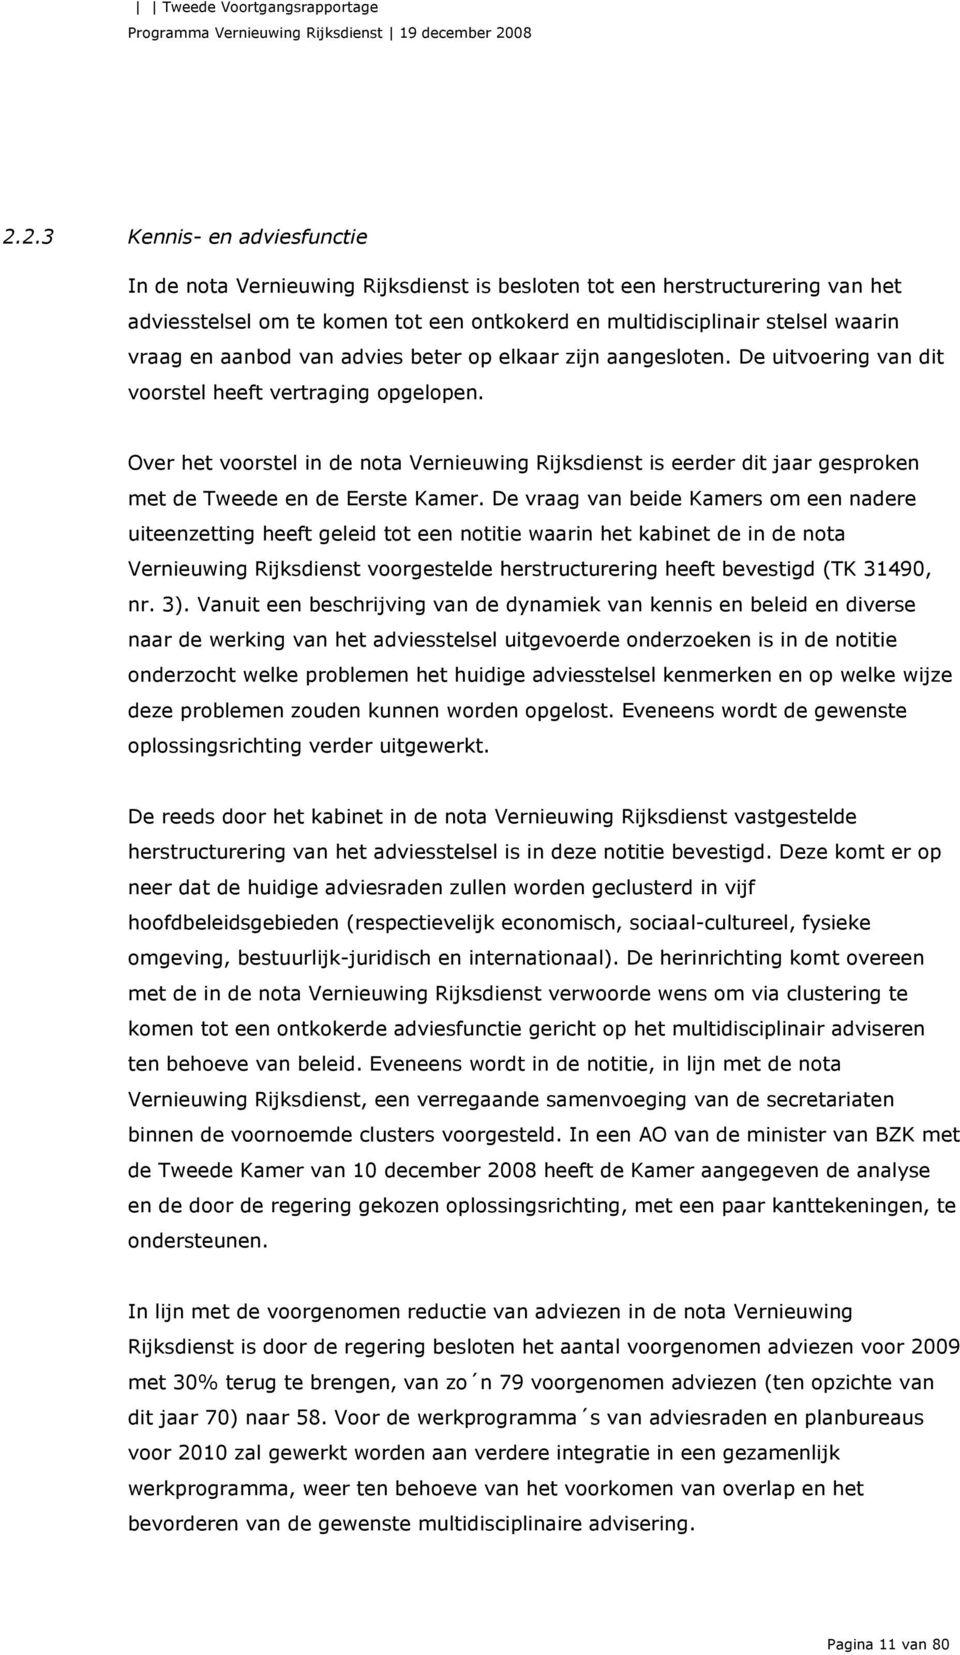 Over het voorstel in de nota Vernieuwing Rijksdienst is eerder dit jaar gesproken met de Tweede en de Eerste Kamer.